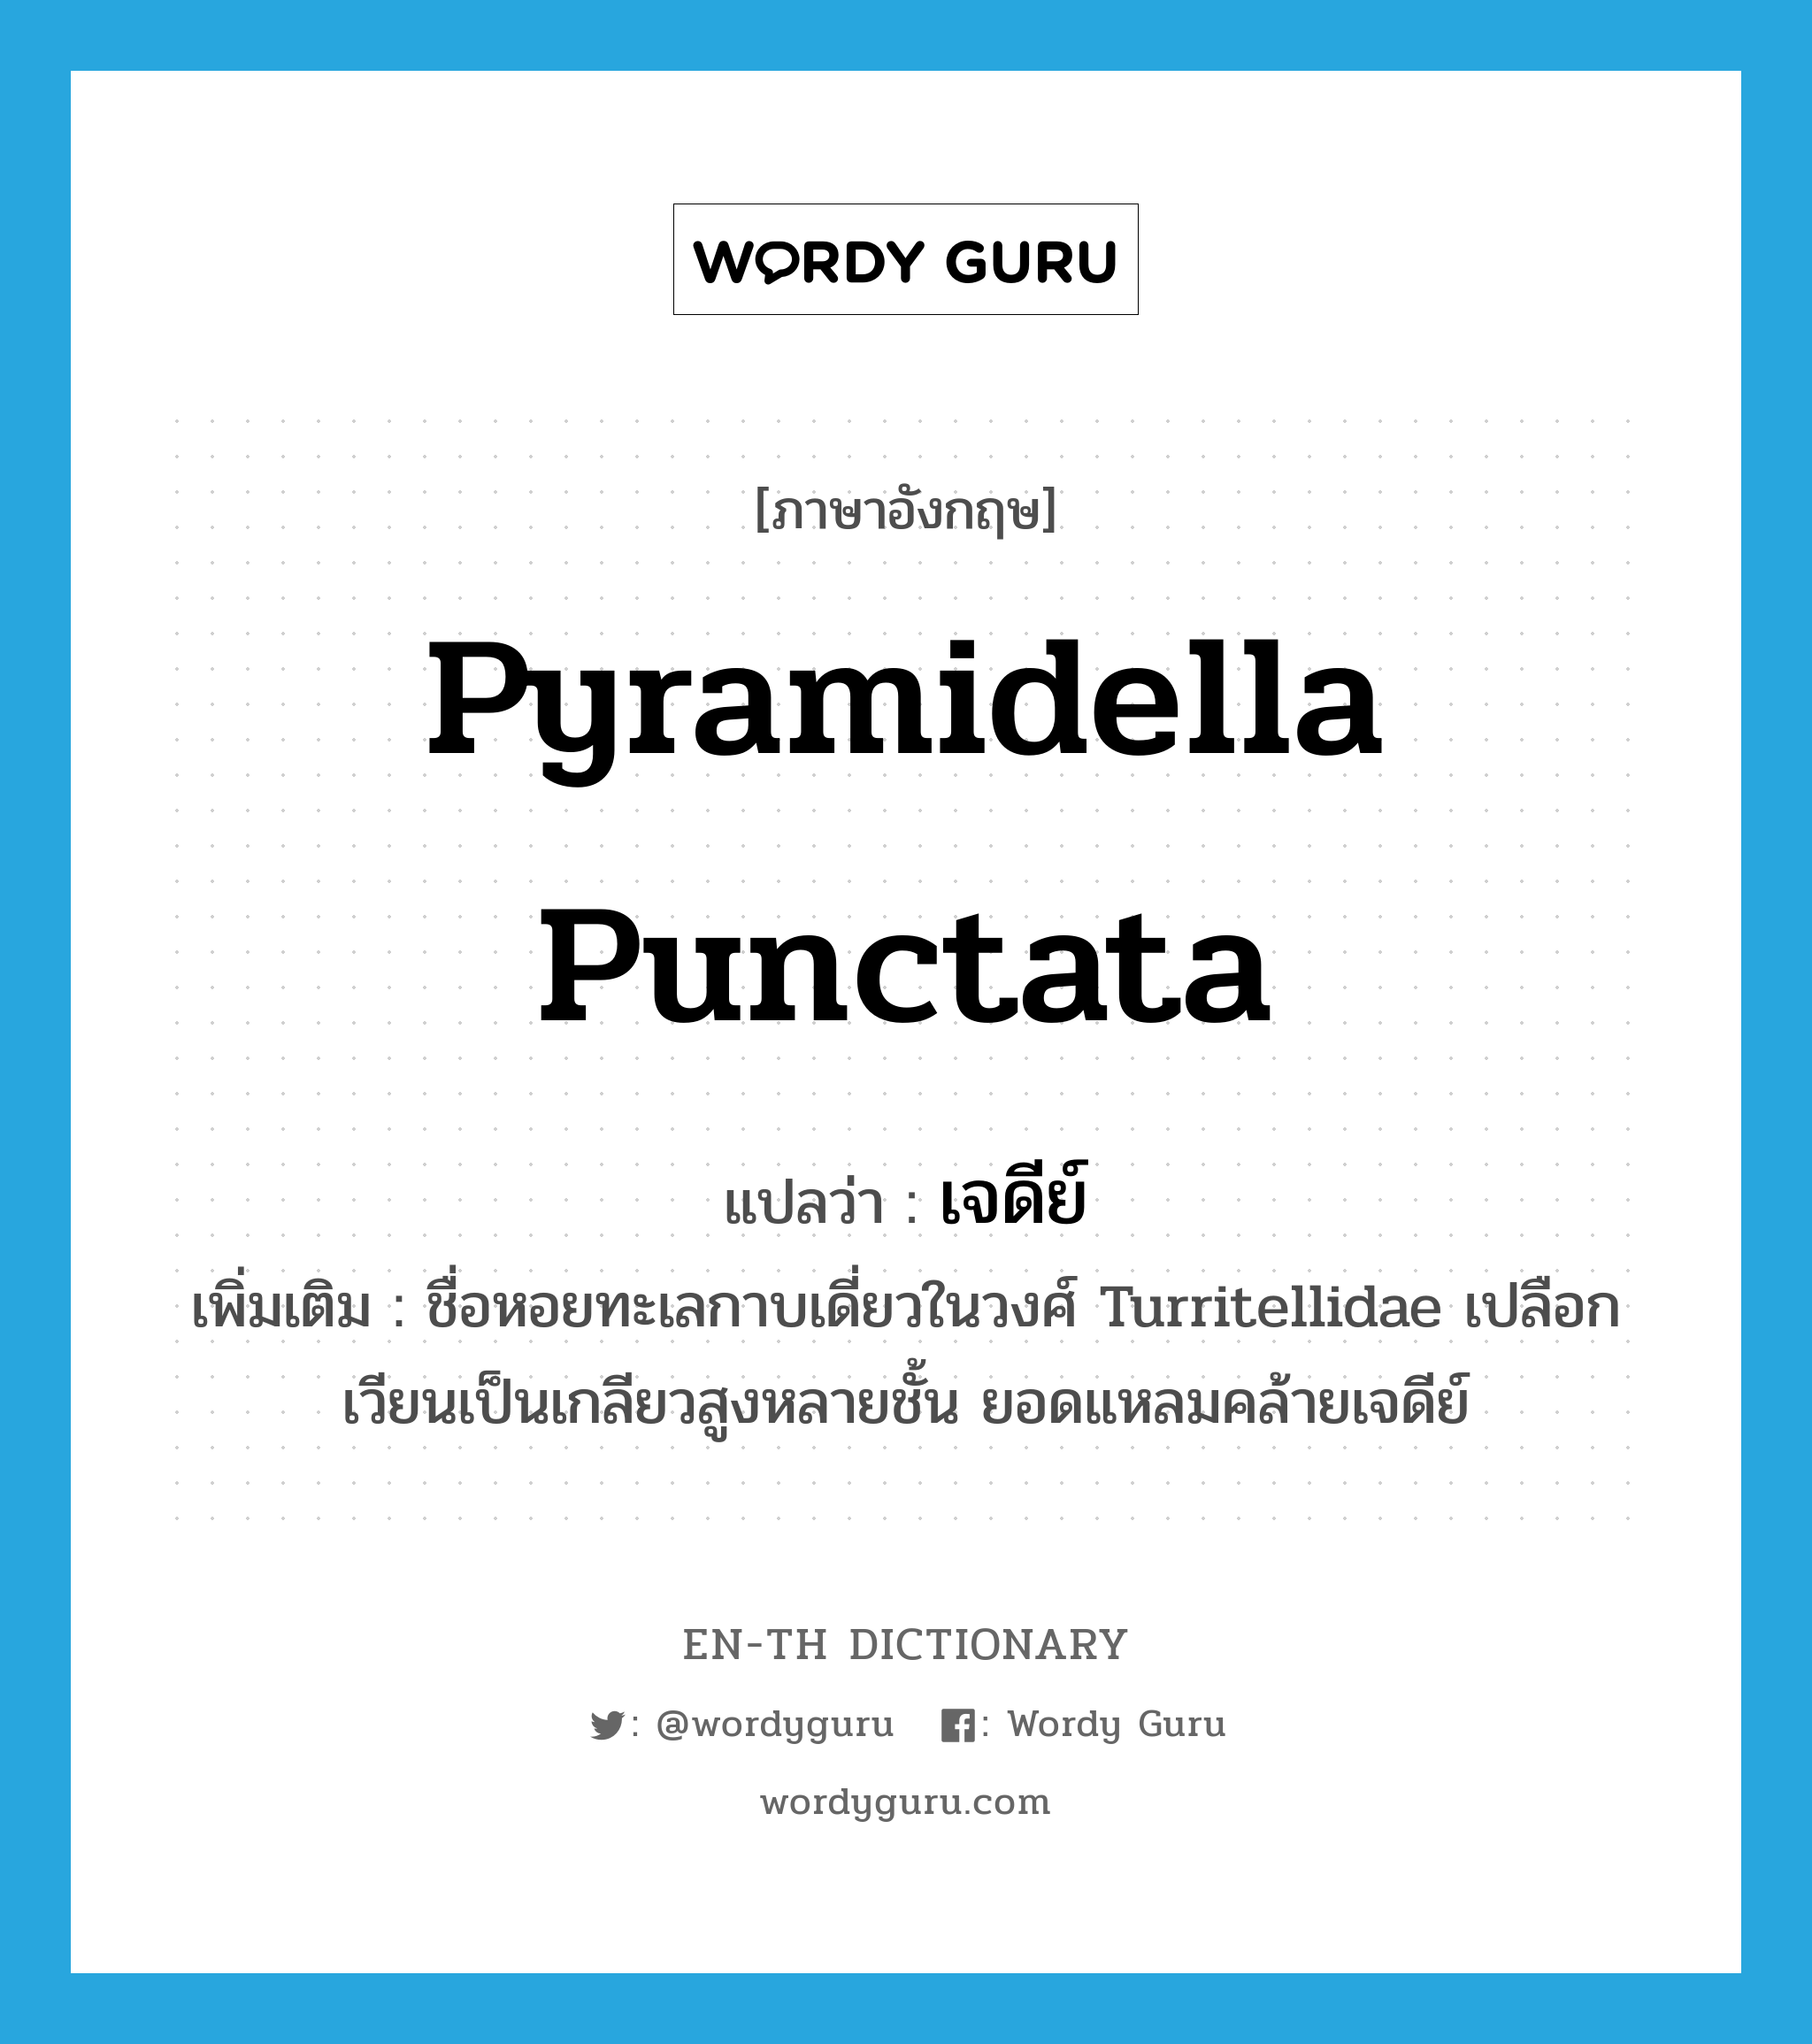 Pyramidella punctata แปลว่า?, คำศัพท์ภาษาอังกฤษ Pyramidella punctata แปลว่า เจดีย์ ประเภท N เพิ่มเติม ชื่อหอยทะเลกาบเดี่ยวในวงศ์ Turritellidae เปลือกเวียนเป็นเกลียวสูงหลายชั้น ยอดแหลมคล้ายเจดีย์ หมวด N